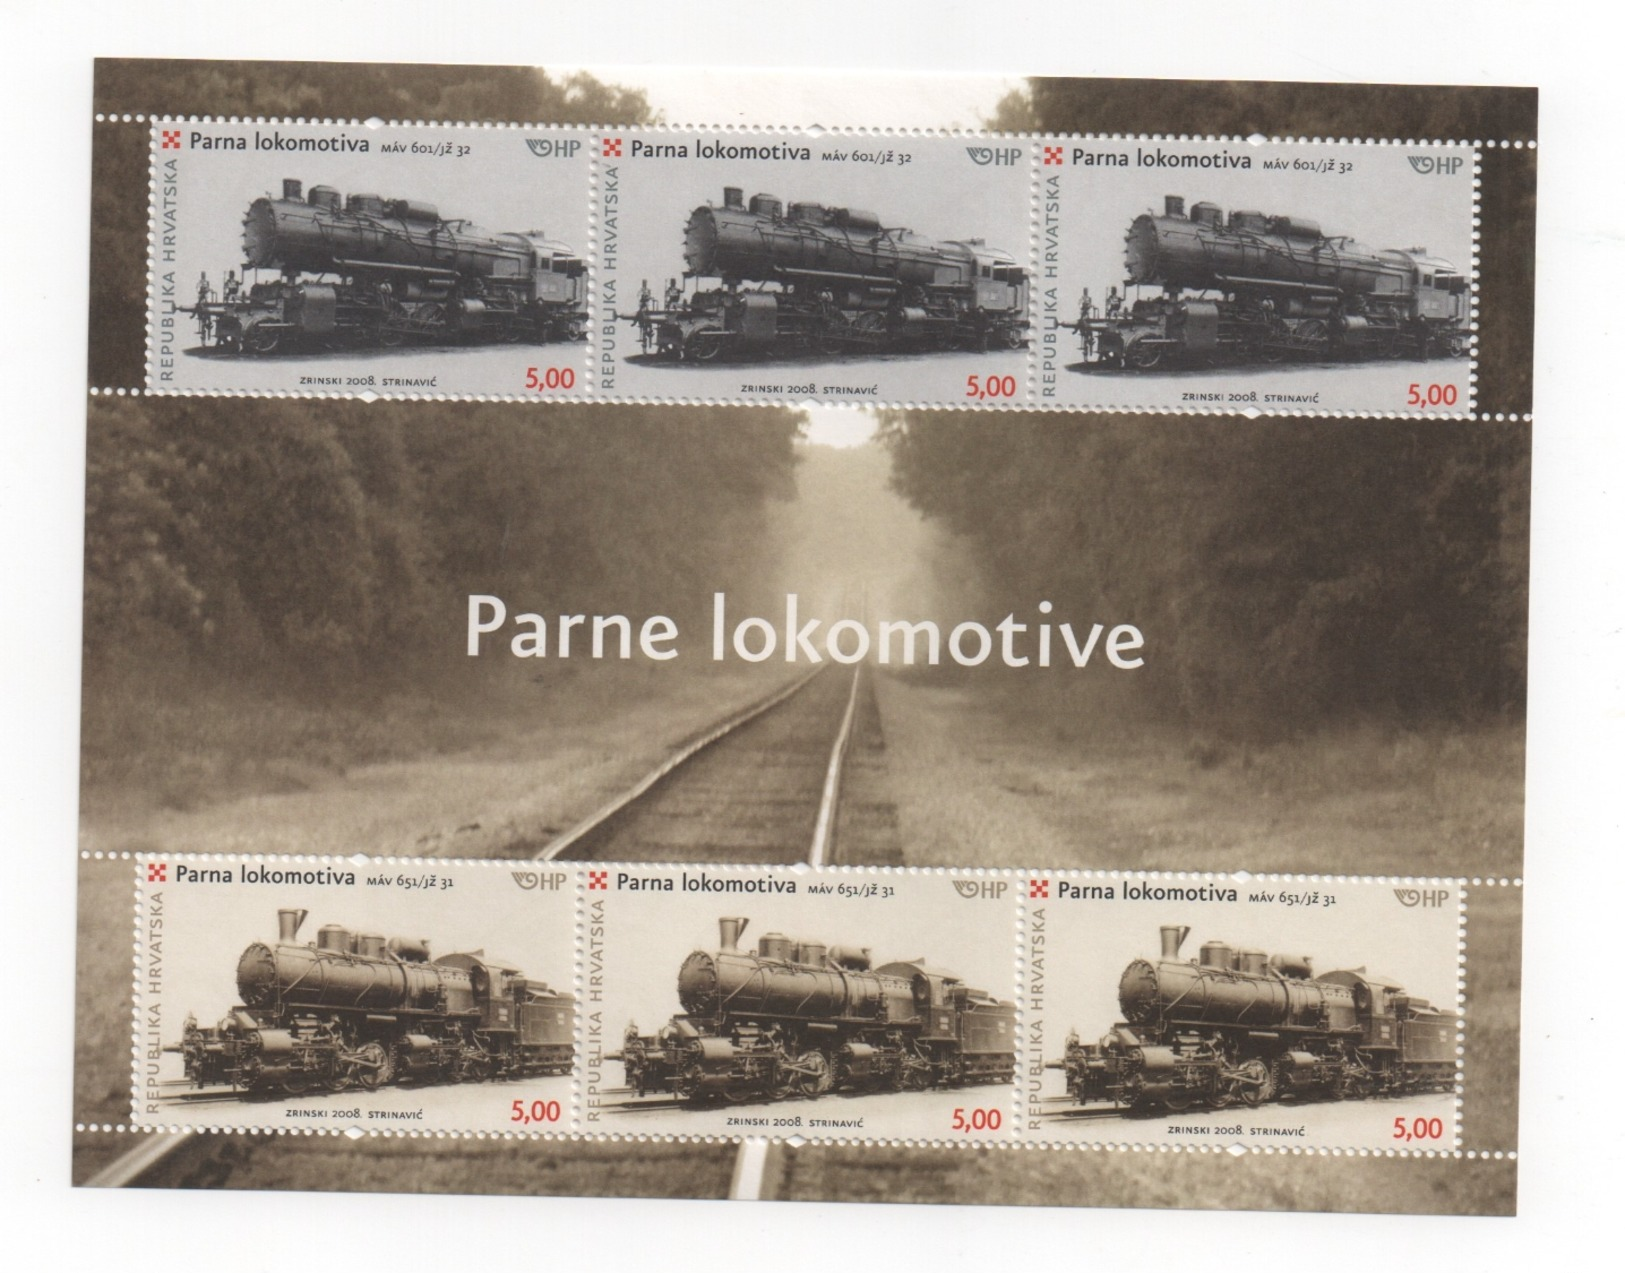 CROATIE - LOCOMOTIVES (Parne Lokomotive ). Feuille De 6 Timbres NEUFS De 2008. - Croatie